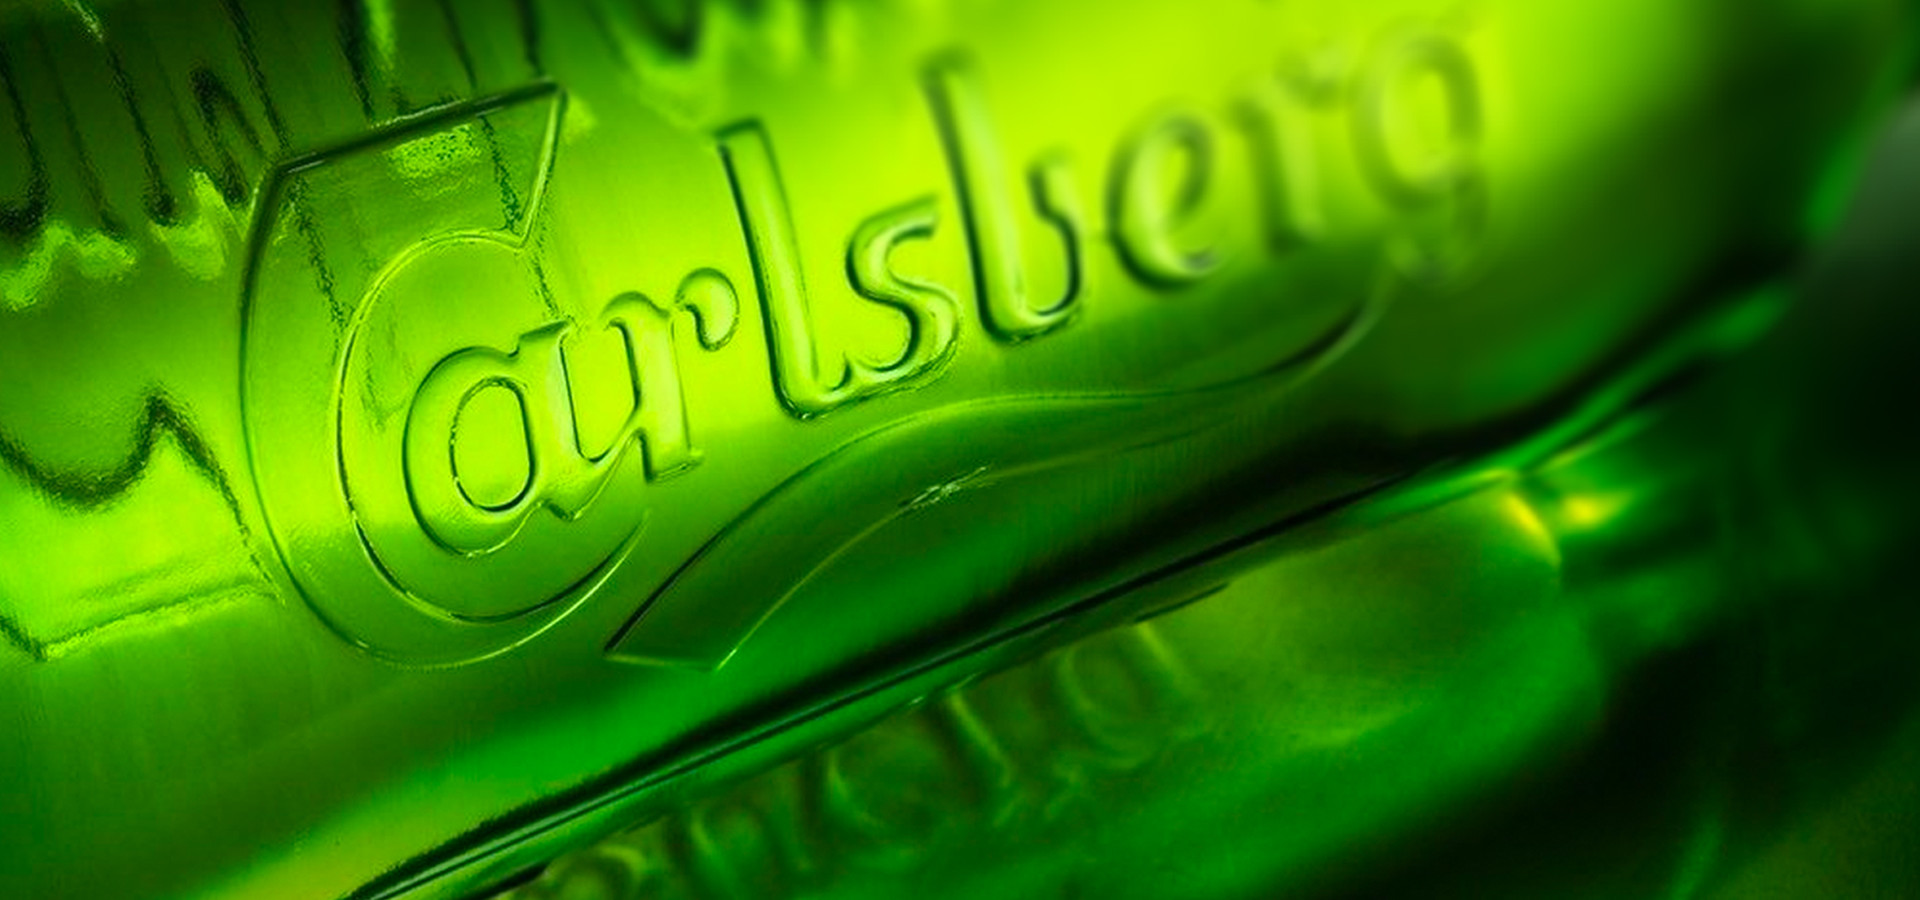 Carlsberg - Bottle Image